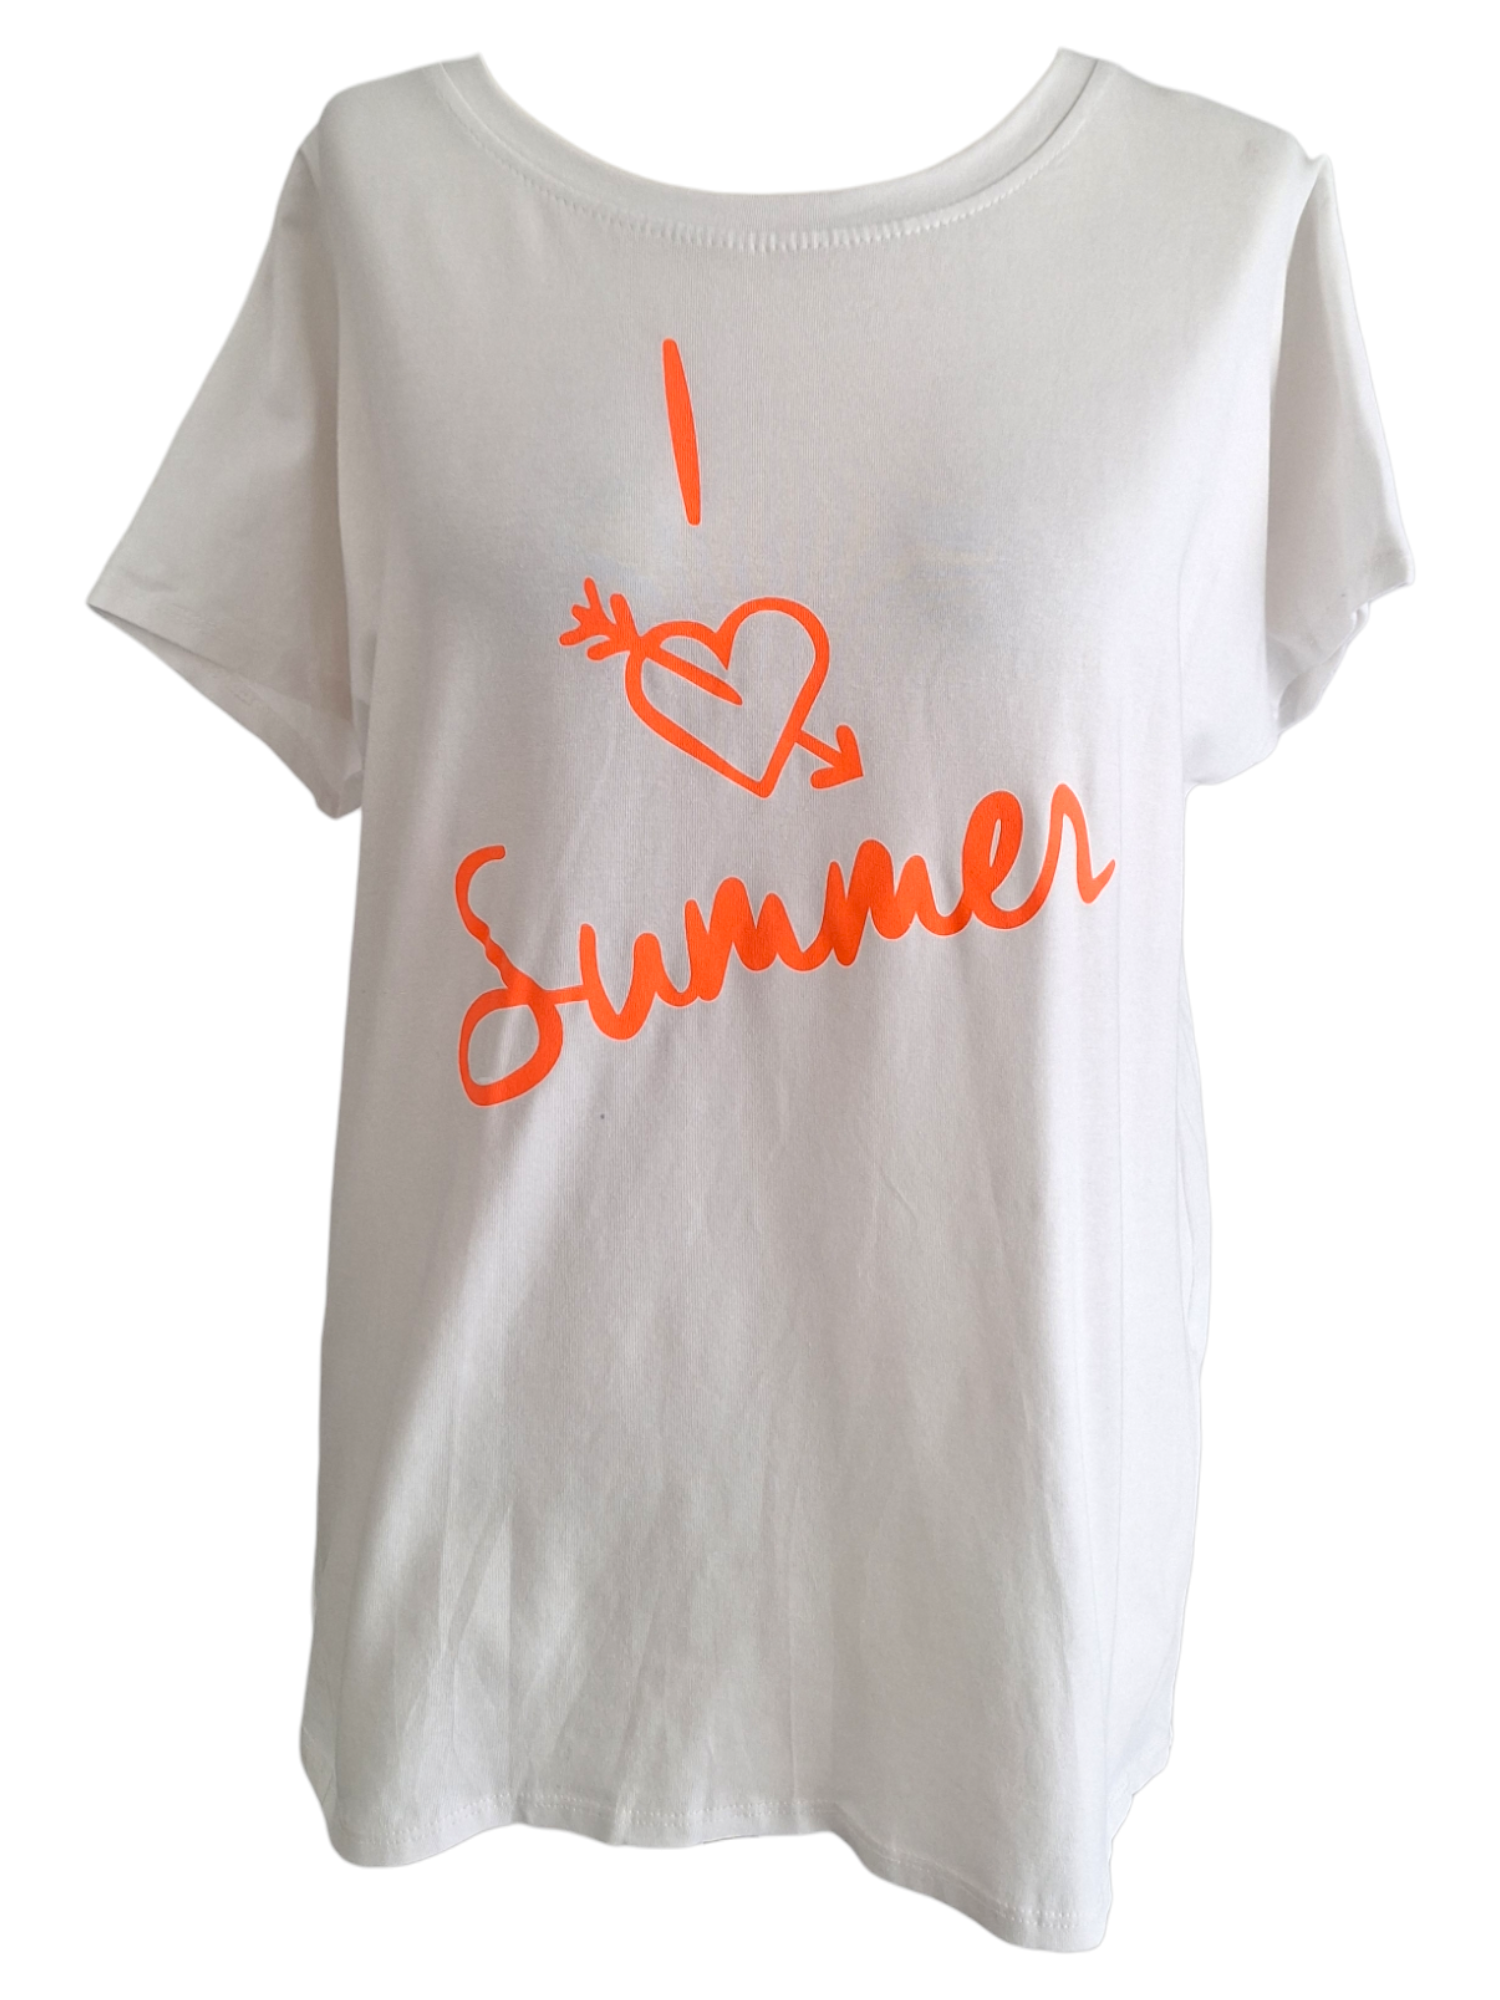 T-Shirt Summer